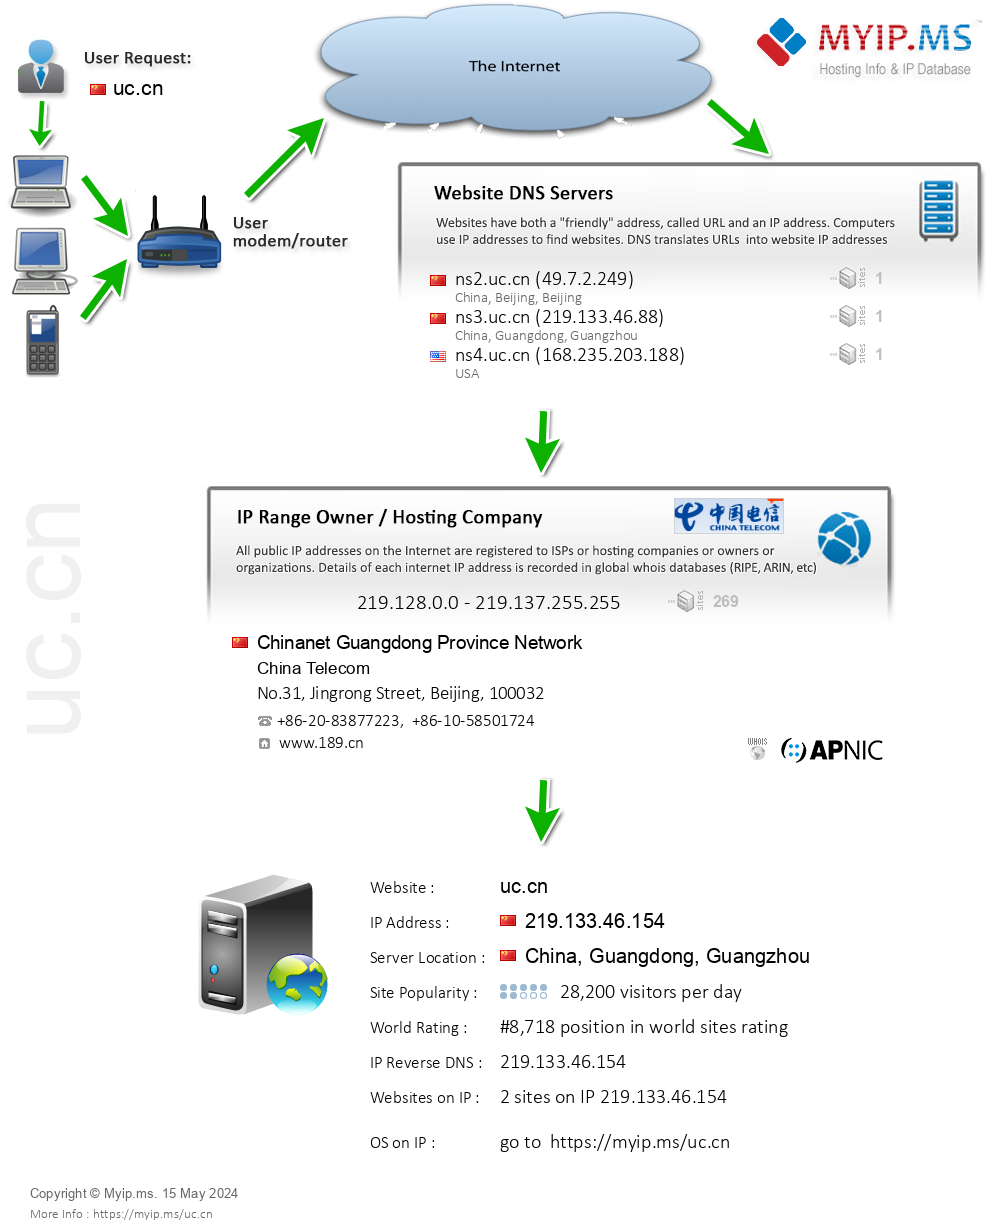 Uc.cn - Website Hosting Visual IP Diagram